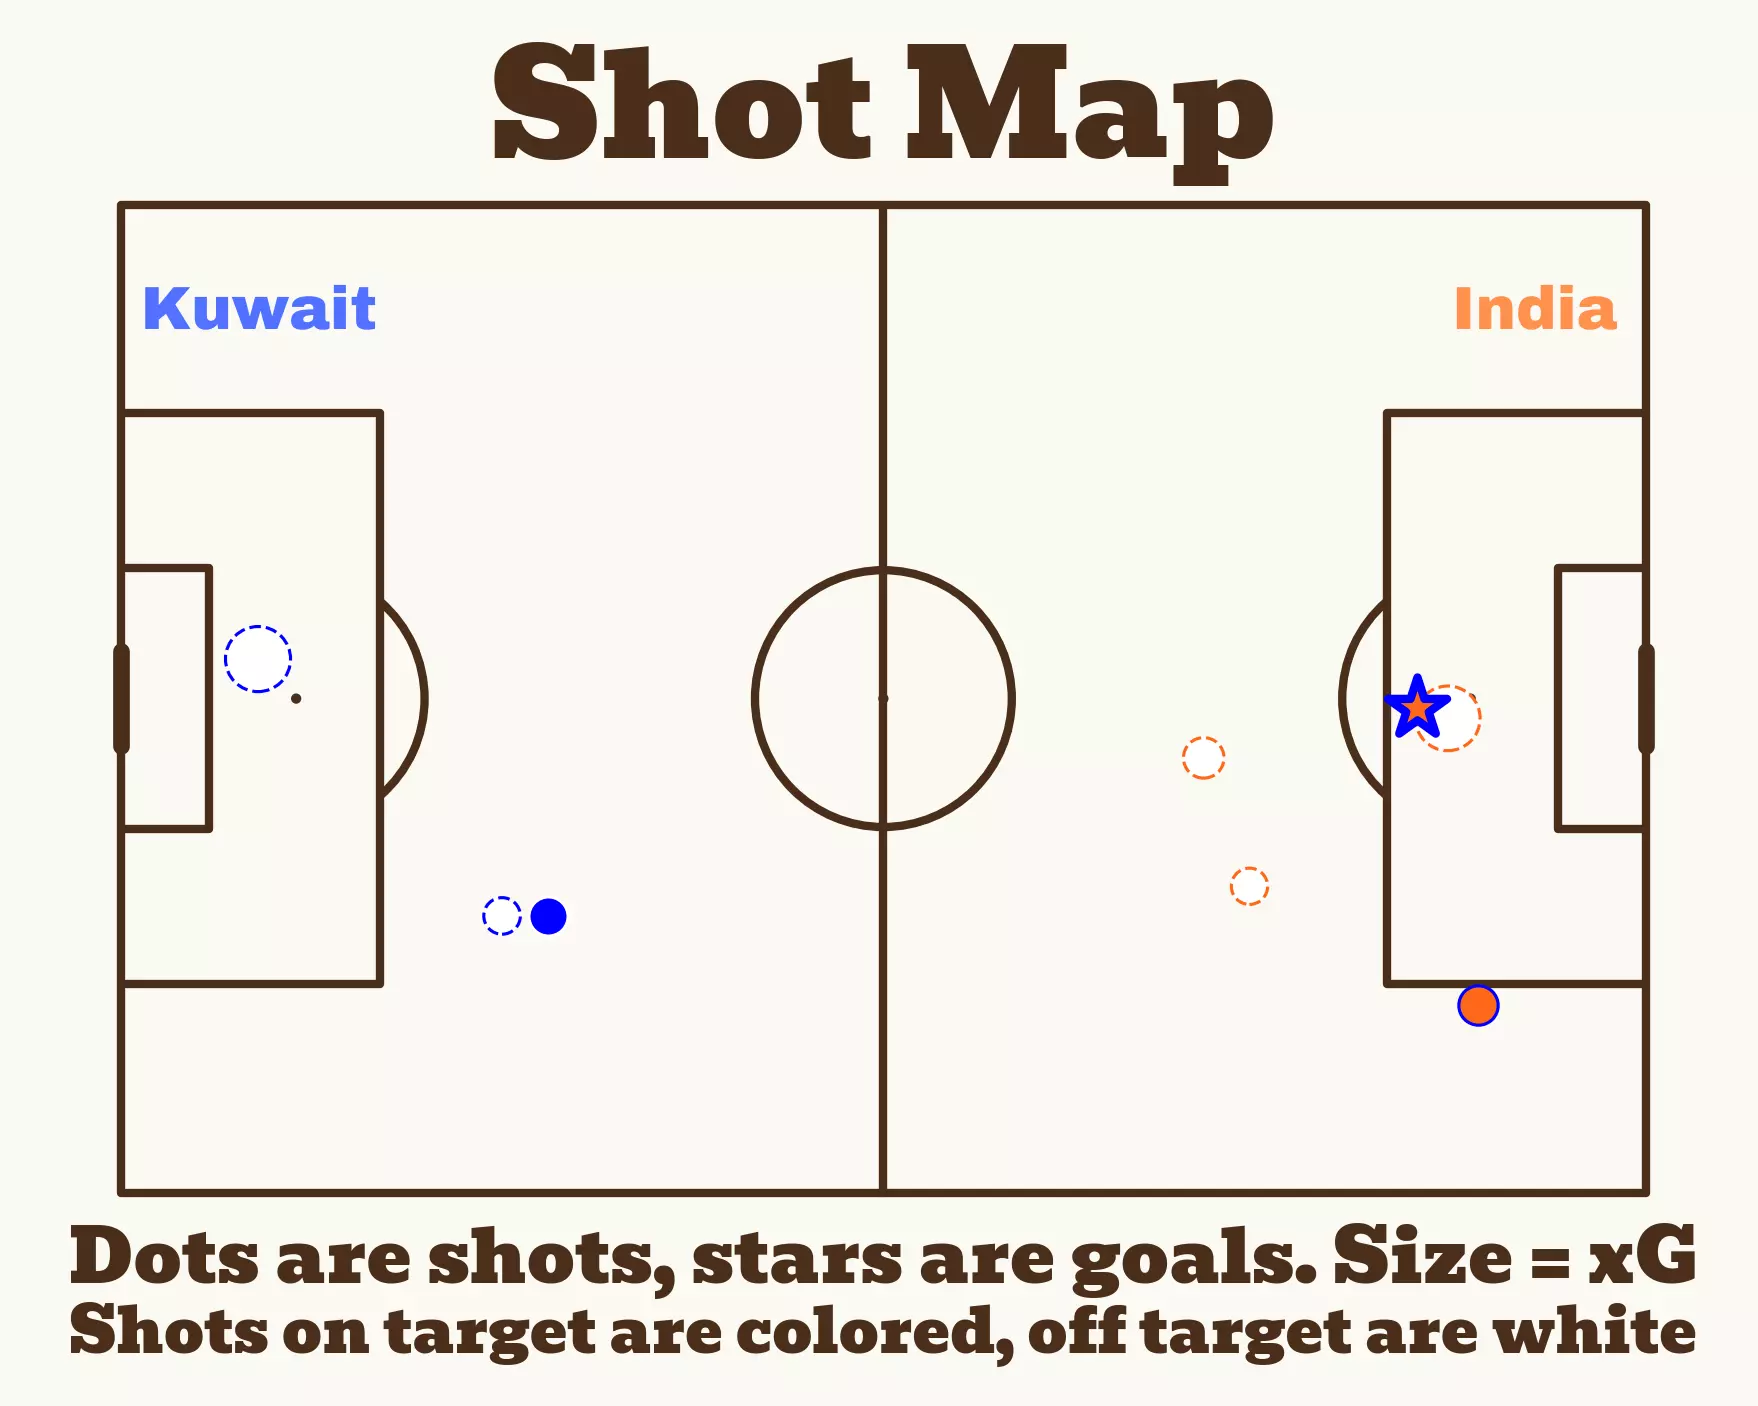 India shot map vs. Kuwait (Image via BeGriffis on X)